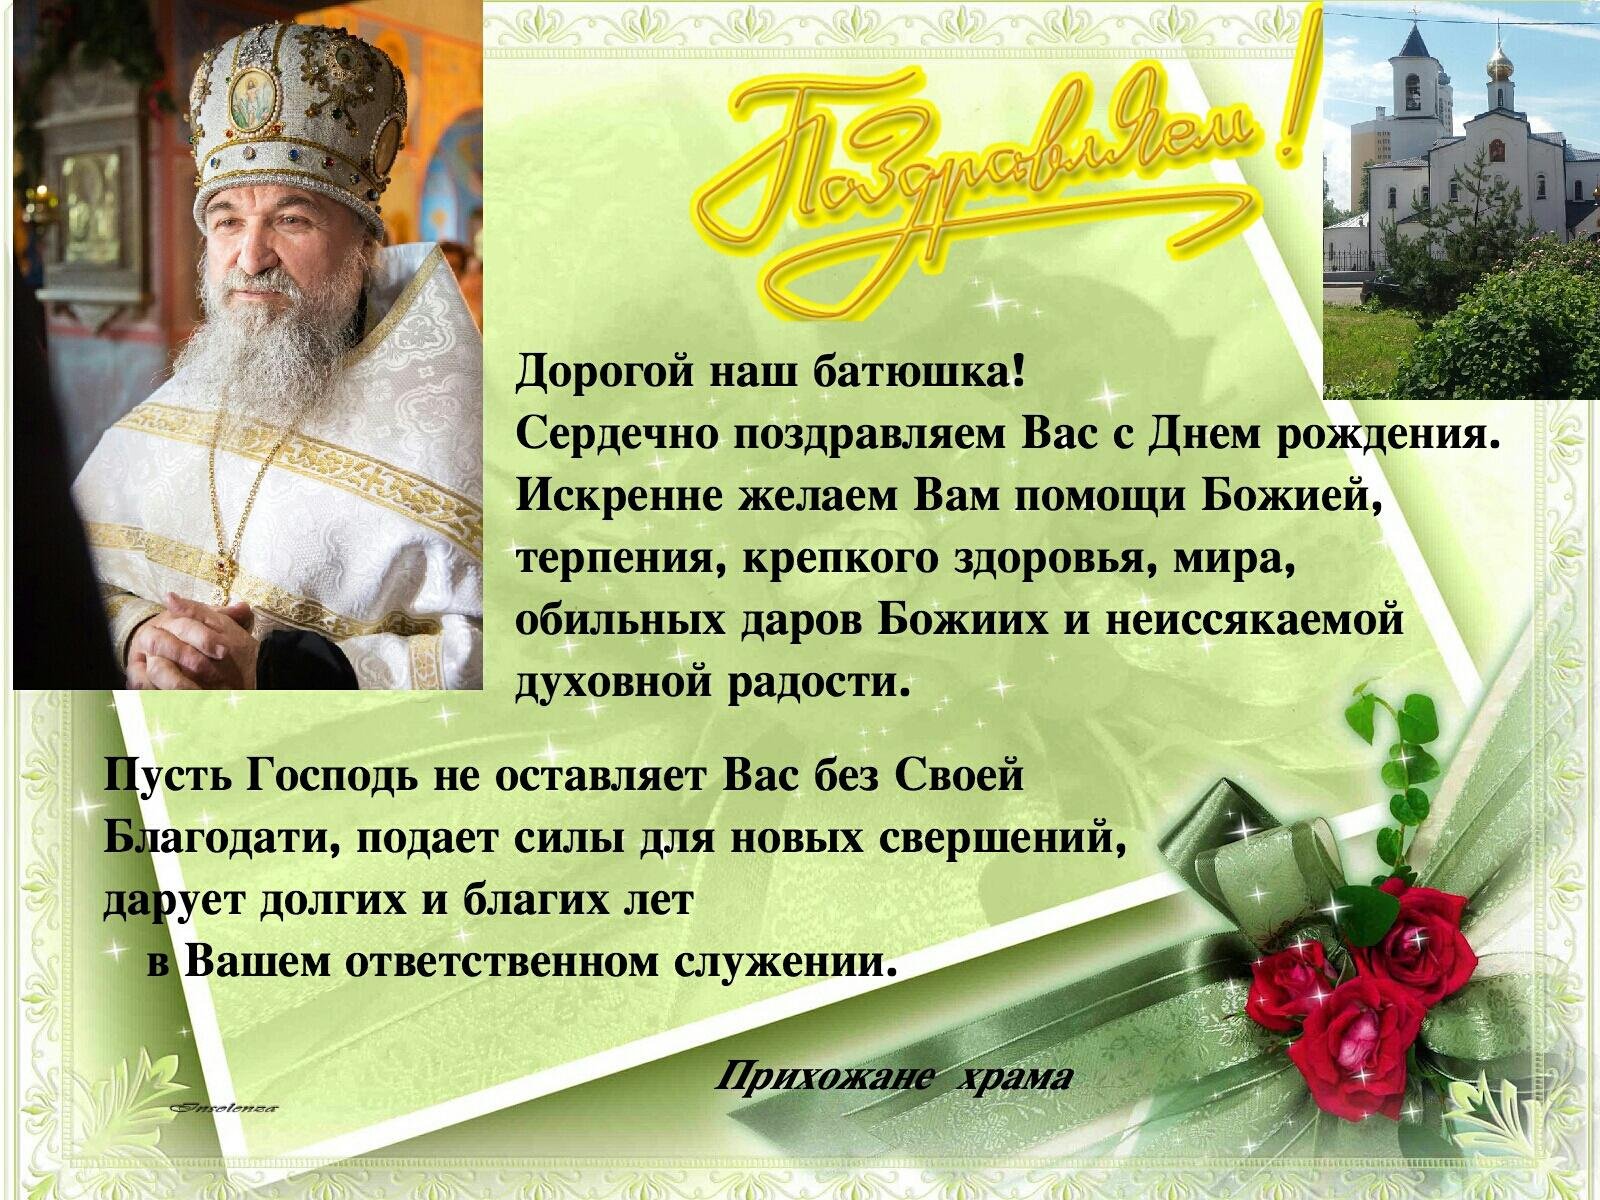 Православный стих с днем рождения. Поздравление священнику с днем рождения. Поздравление с днём рождения священника православное. Поздравление батюшке с днем рождения. Поздравления свещен ику.